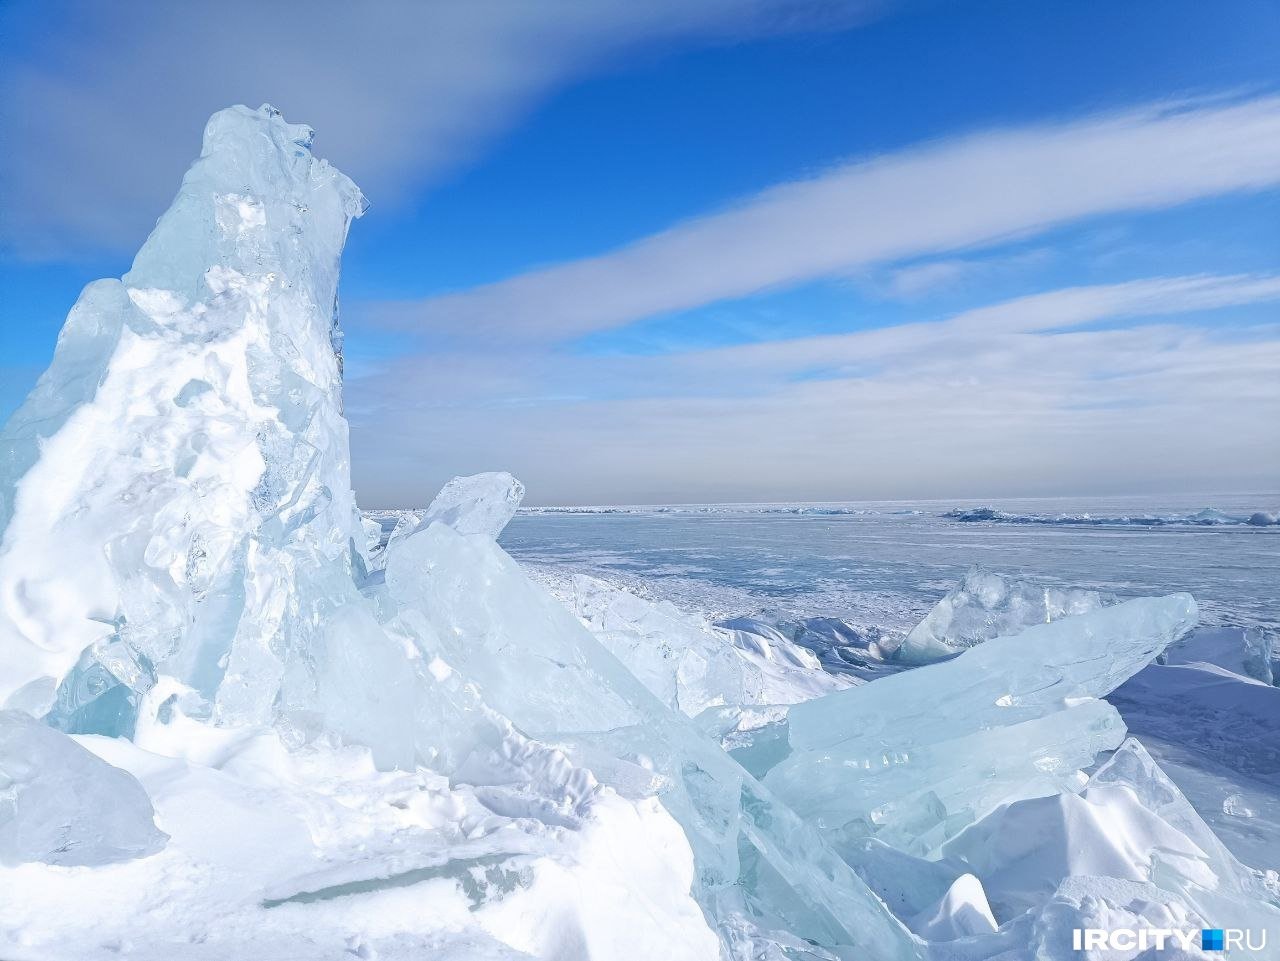 Трещина на байкале. Торосы на Байкале. Kbcndzyrf KTL. Байкал трещины на льду. Лед в большом Голоустном.